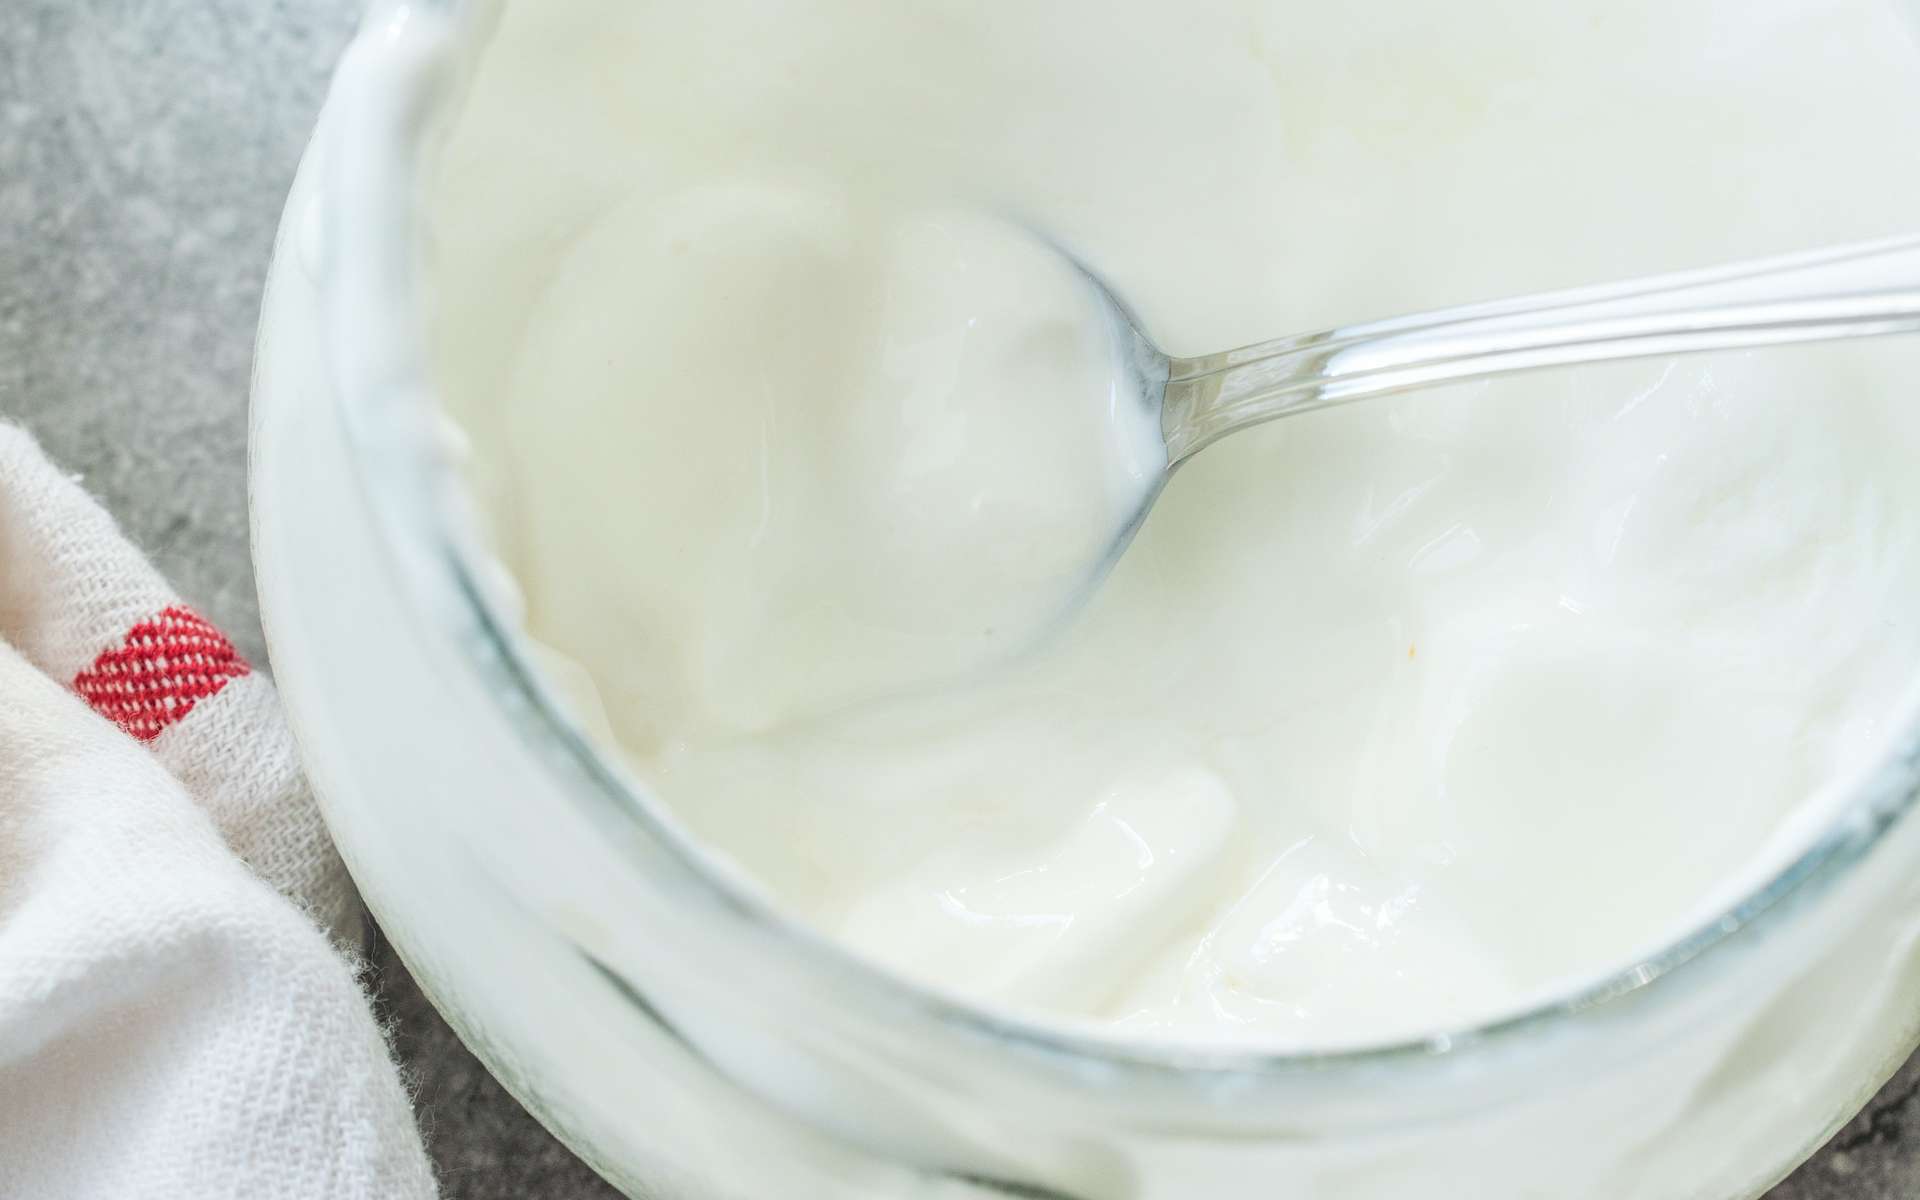 Le yaourt contient plus de bactéries lactiques que le fromage blanc. © Alp Aksoy, Adobe Stock